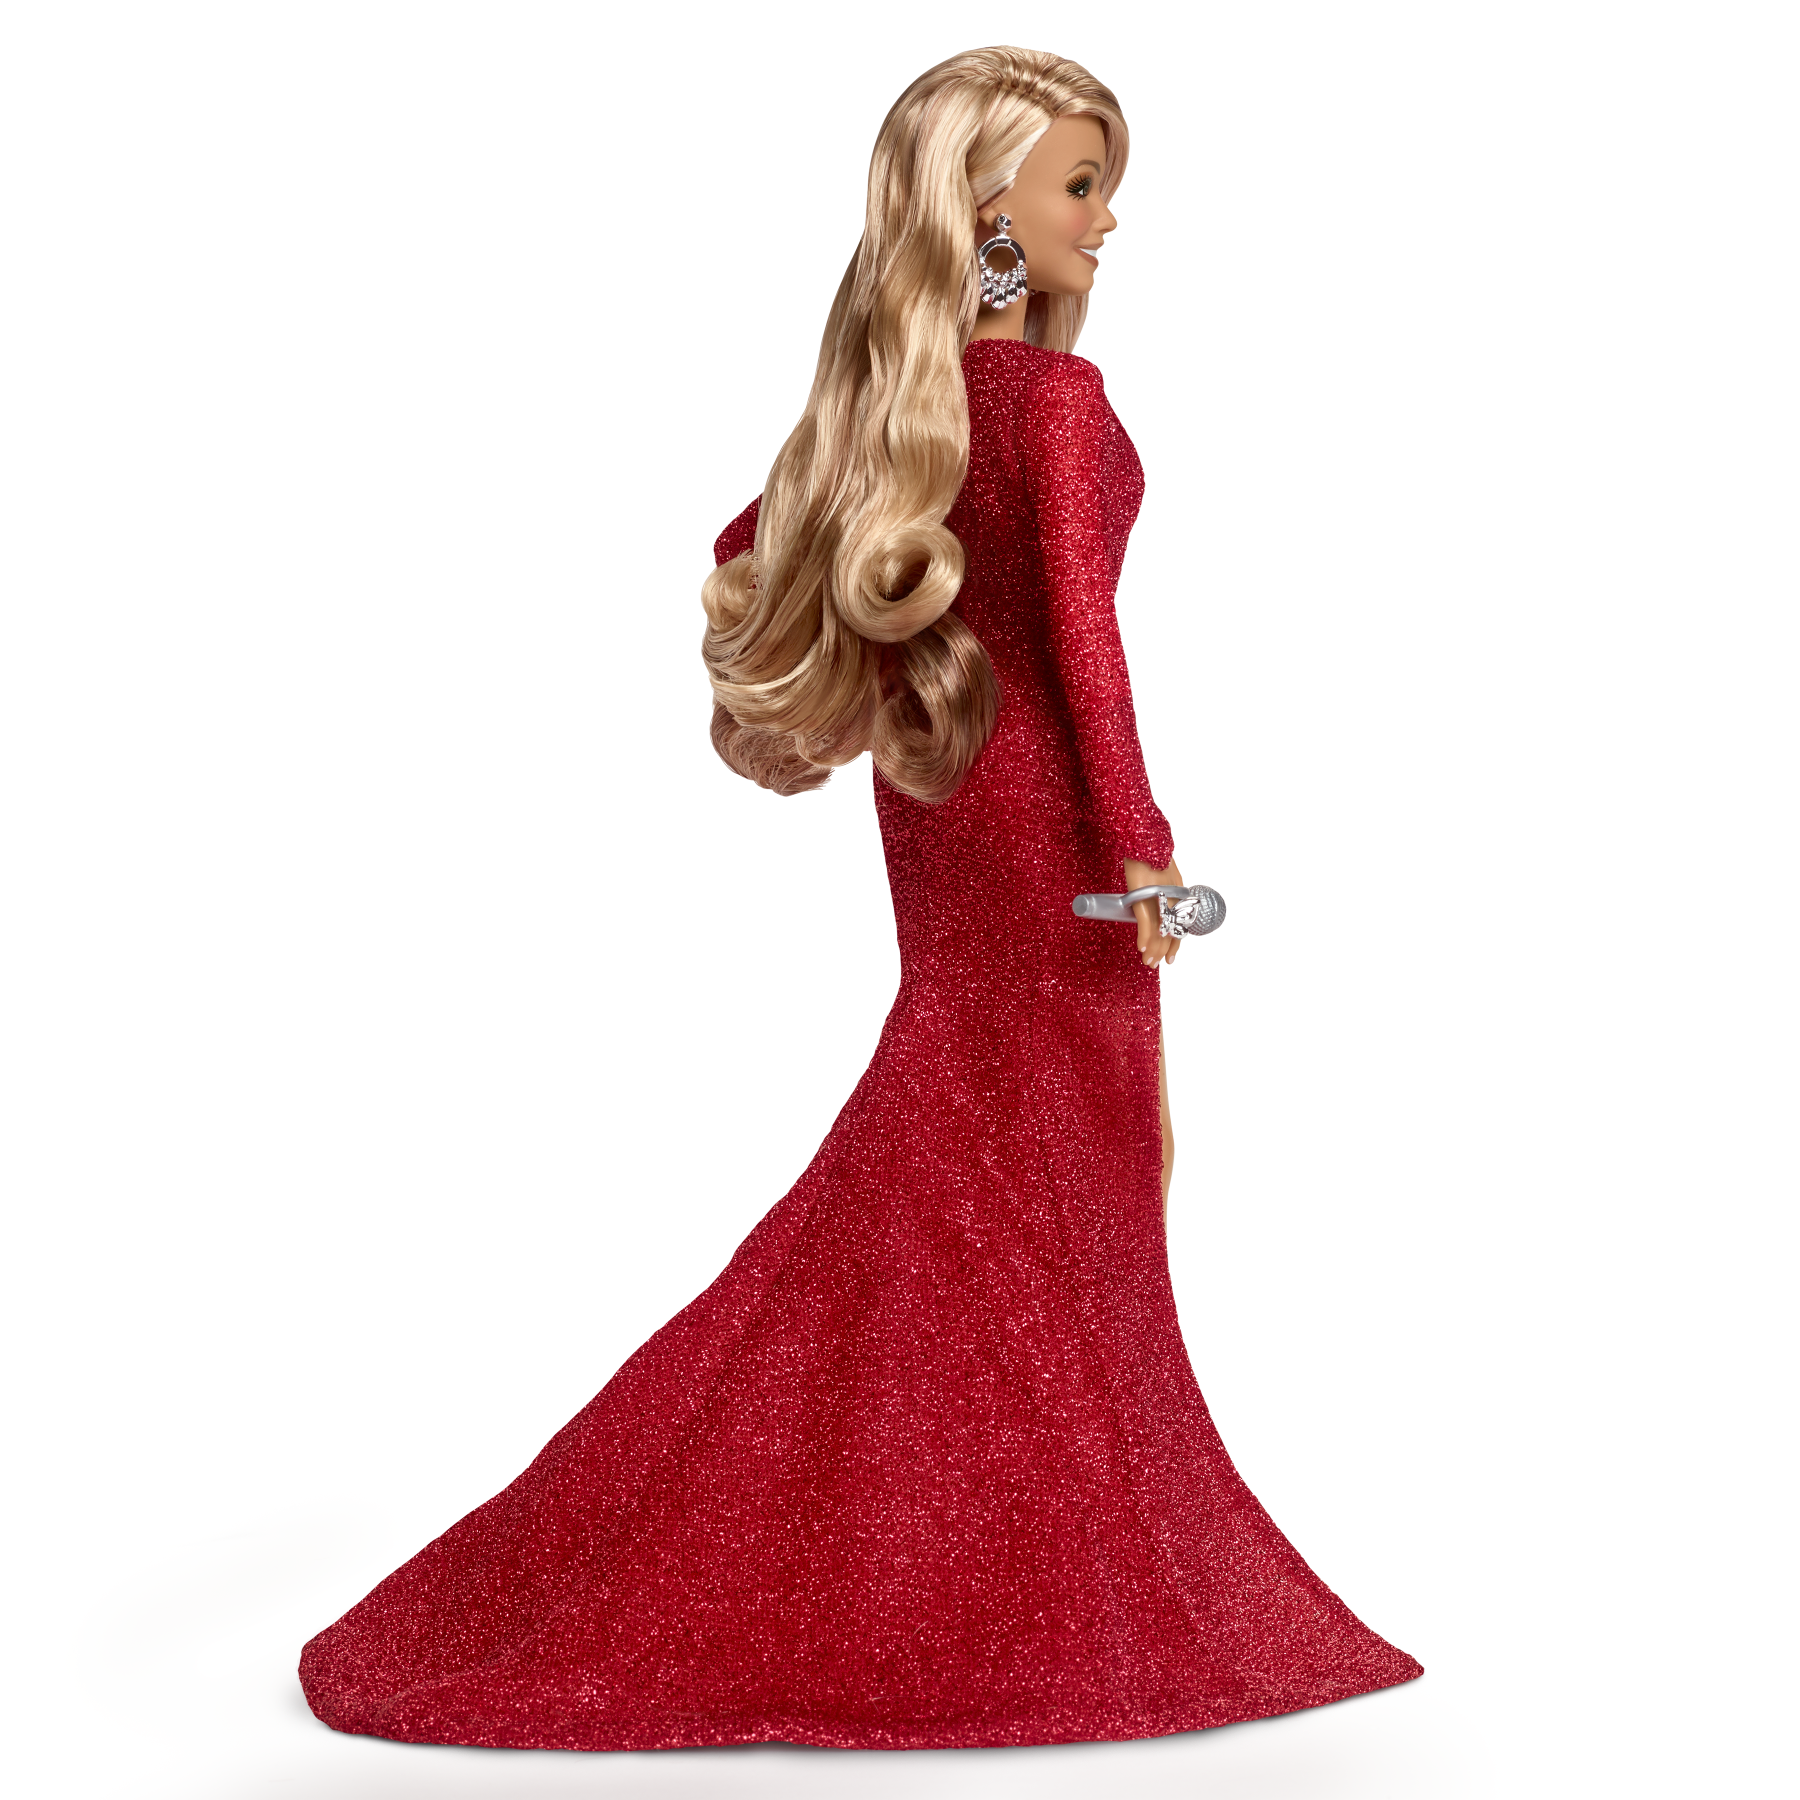 Barbie signature - mariah carey, bambola da collezione per celebrare il natale, con scintillante abito rosso e accessori argentati - Barbie